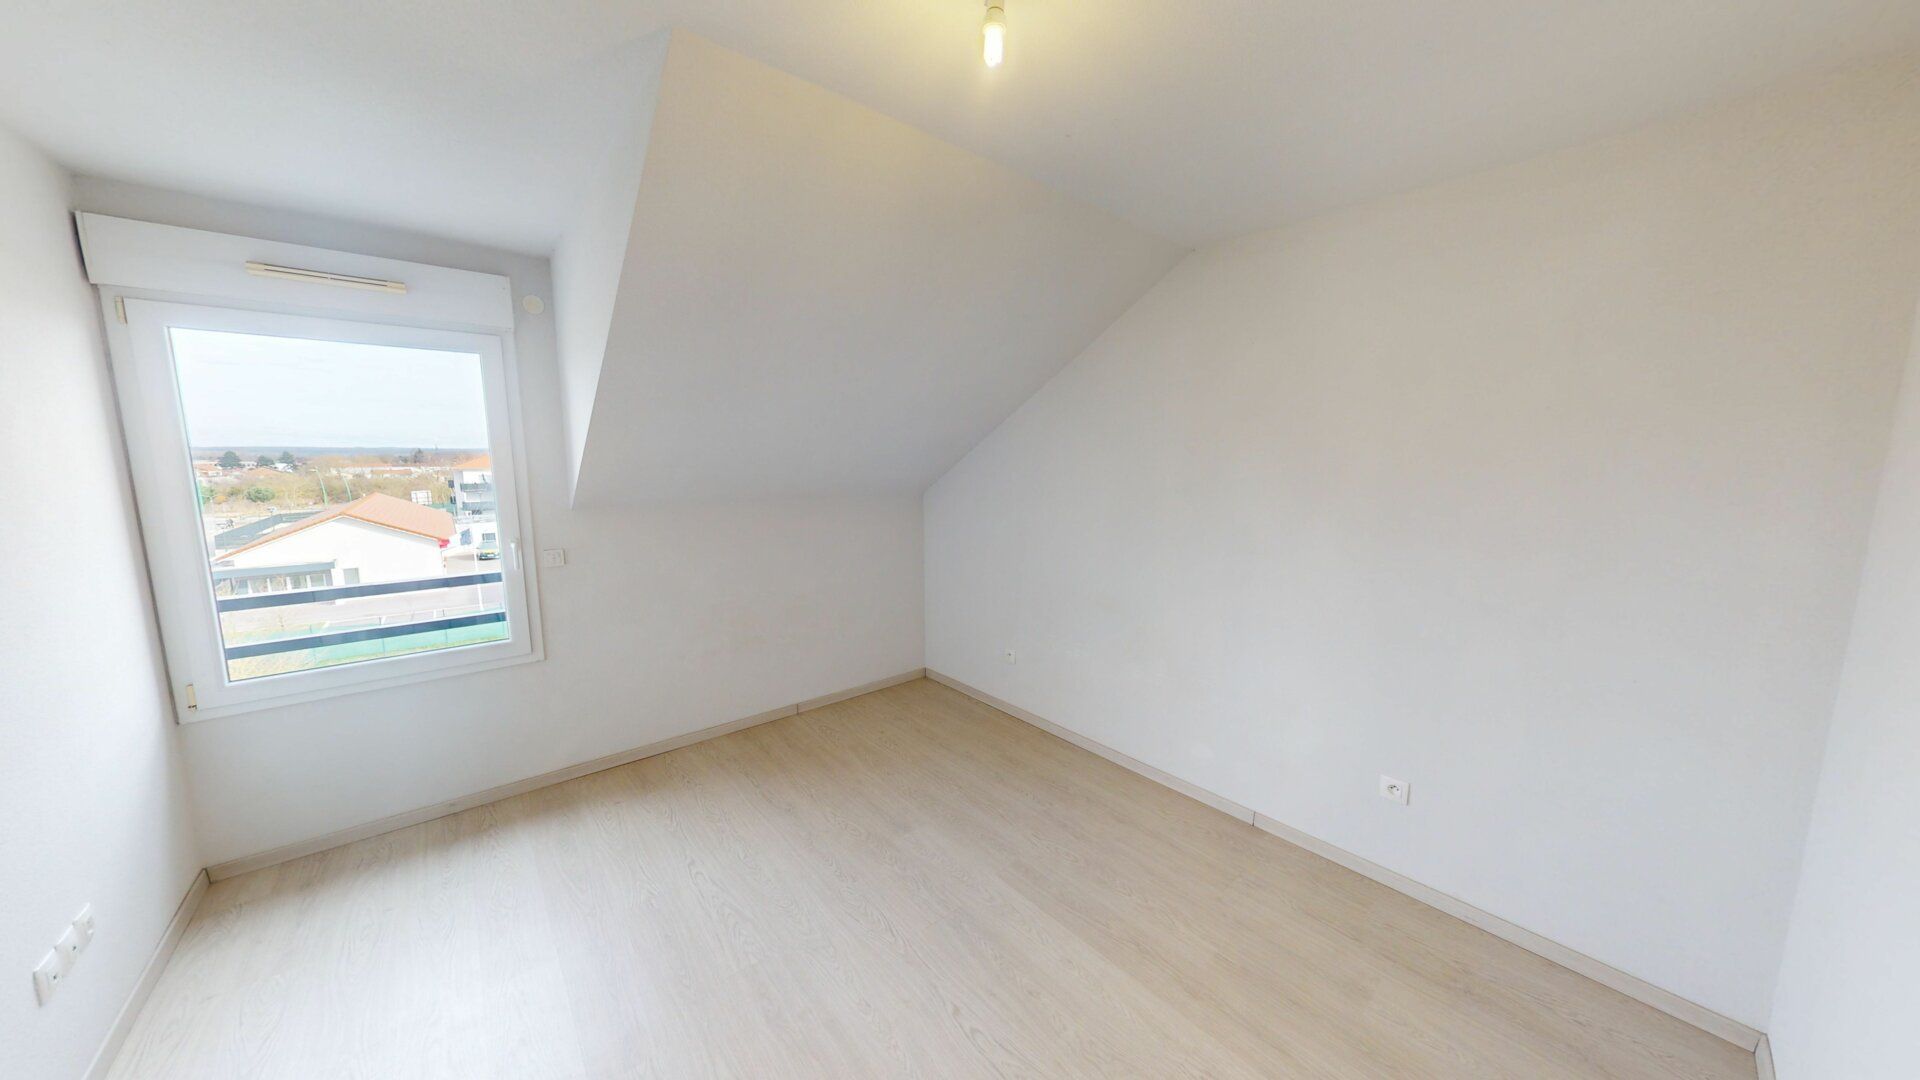 Appartement à vendre 3 60.24m2 à Maizières-lès-Metz vignette-5